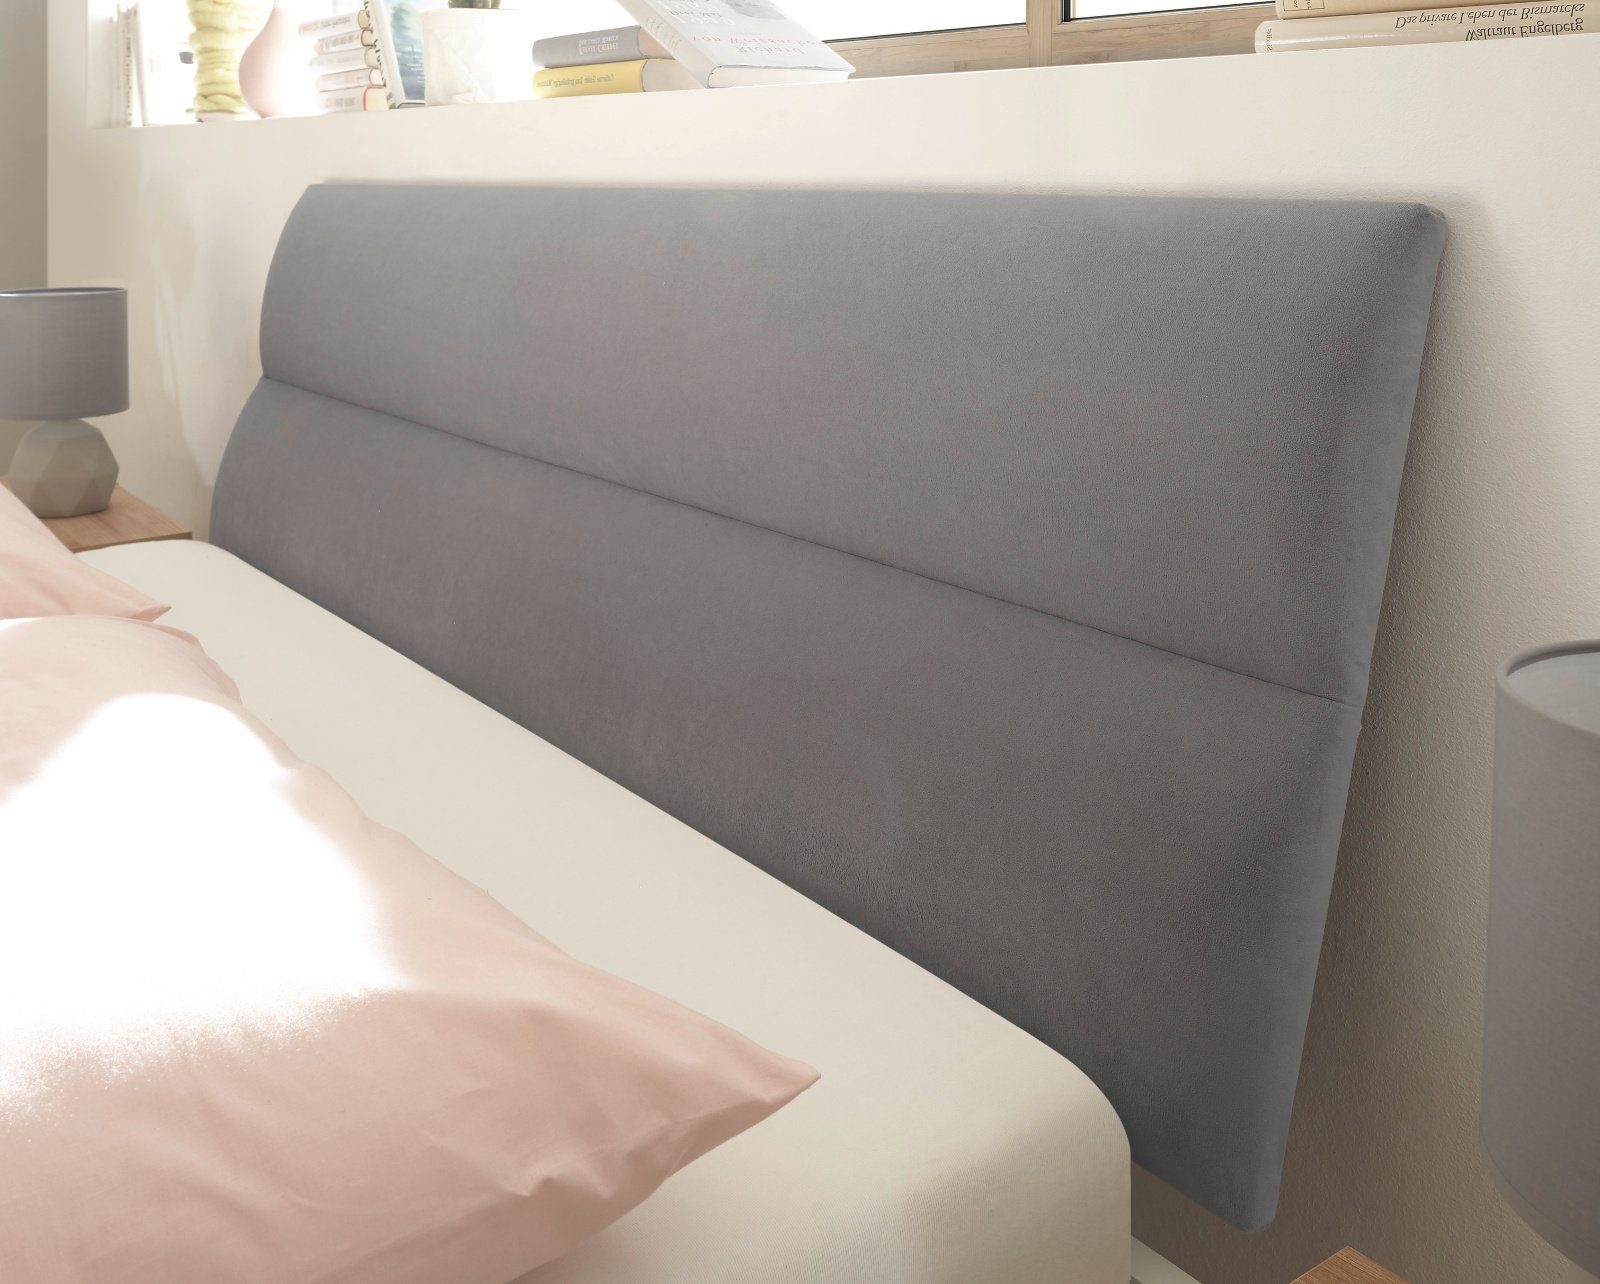 mit in Design Eiche, Helge Liegefläche (Bett Einzelbett Polsterung mint in grau, cm), x 200 140 Furn.Design skandinavisches oder weiß